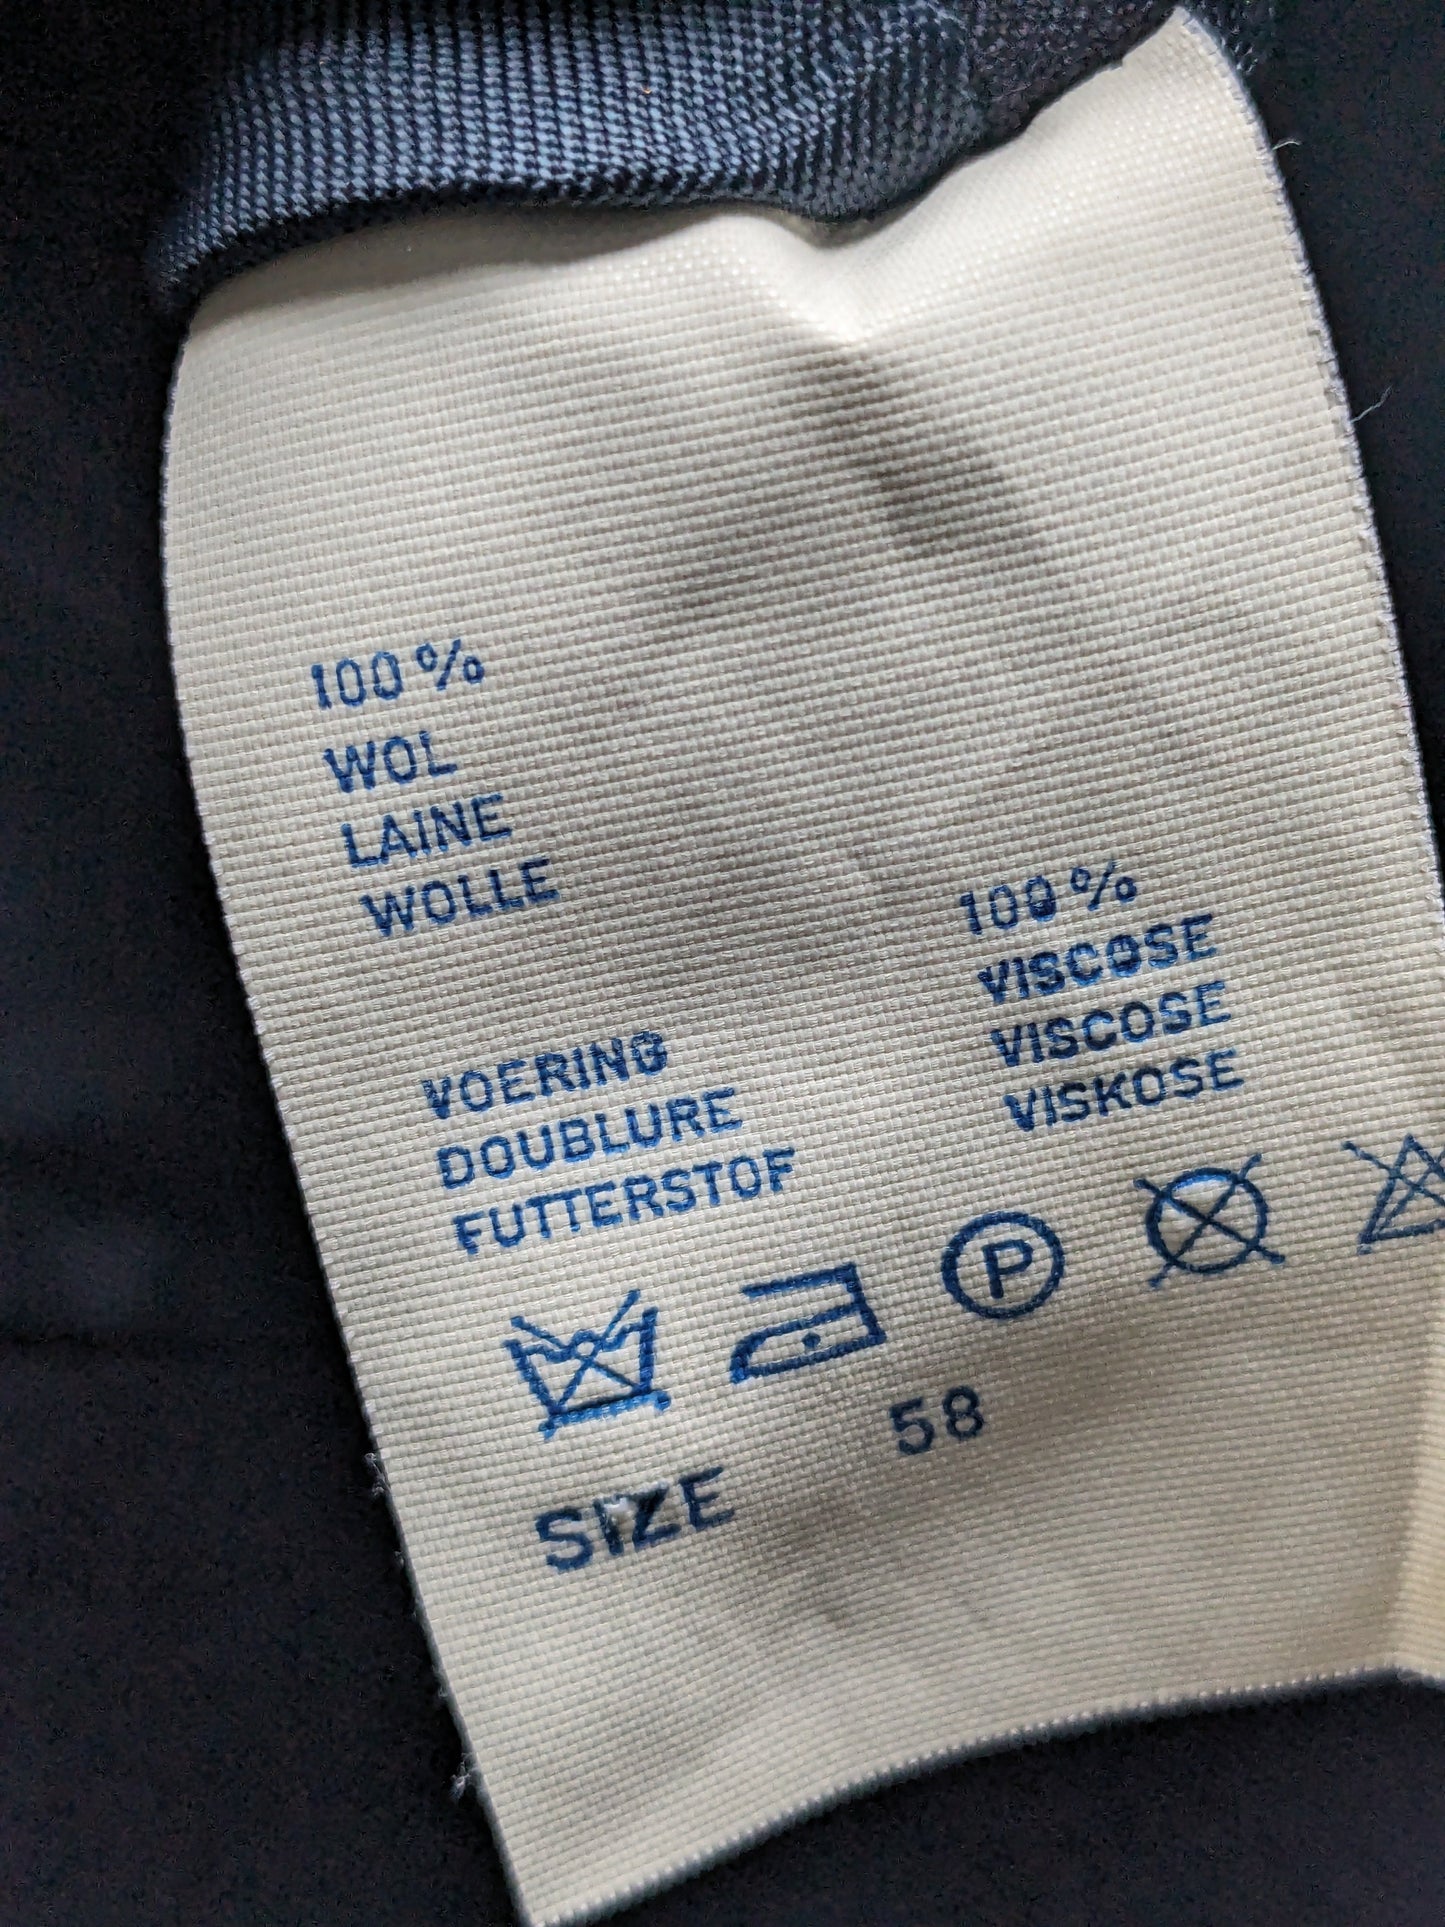 Giacca di lana scapa vintage con bellissimi bottoni. Colorato blu scuro. Taglia 58 / XL.